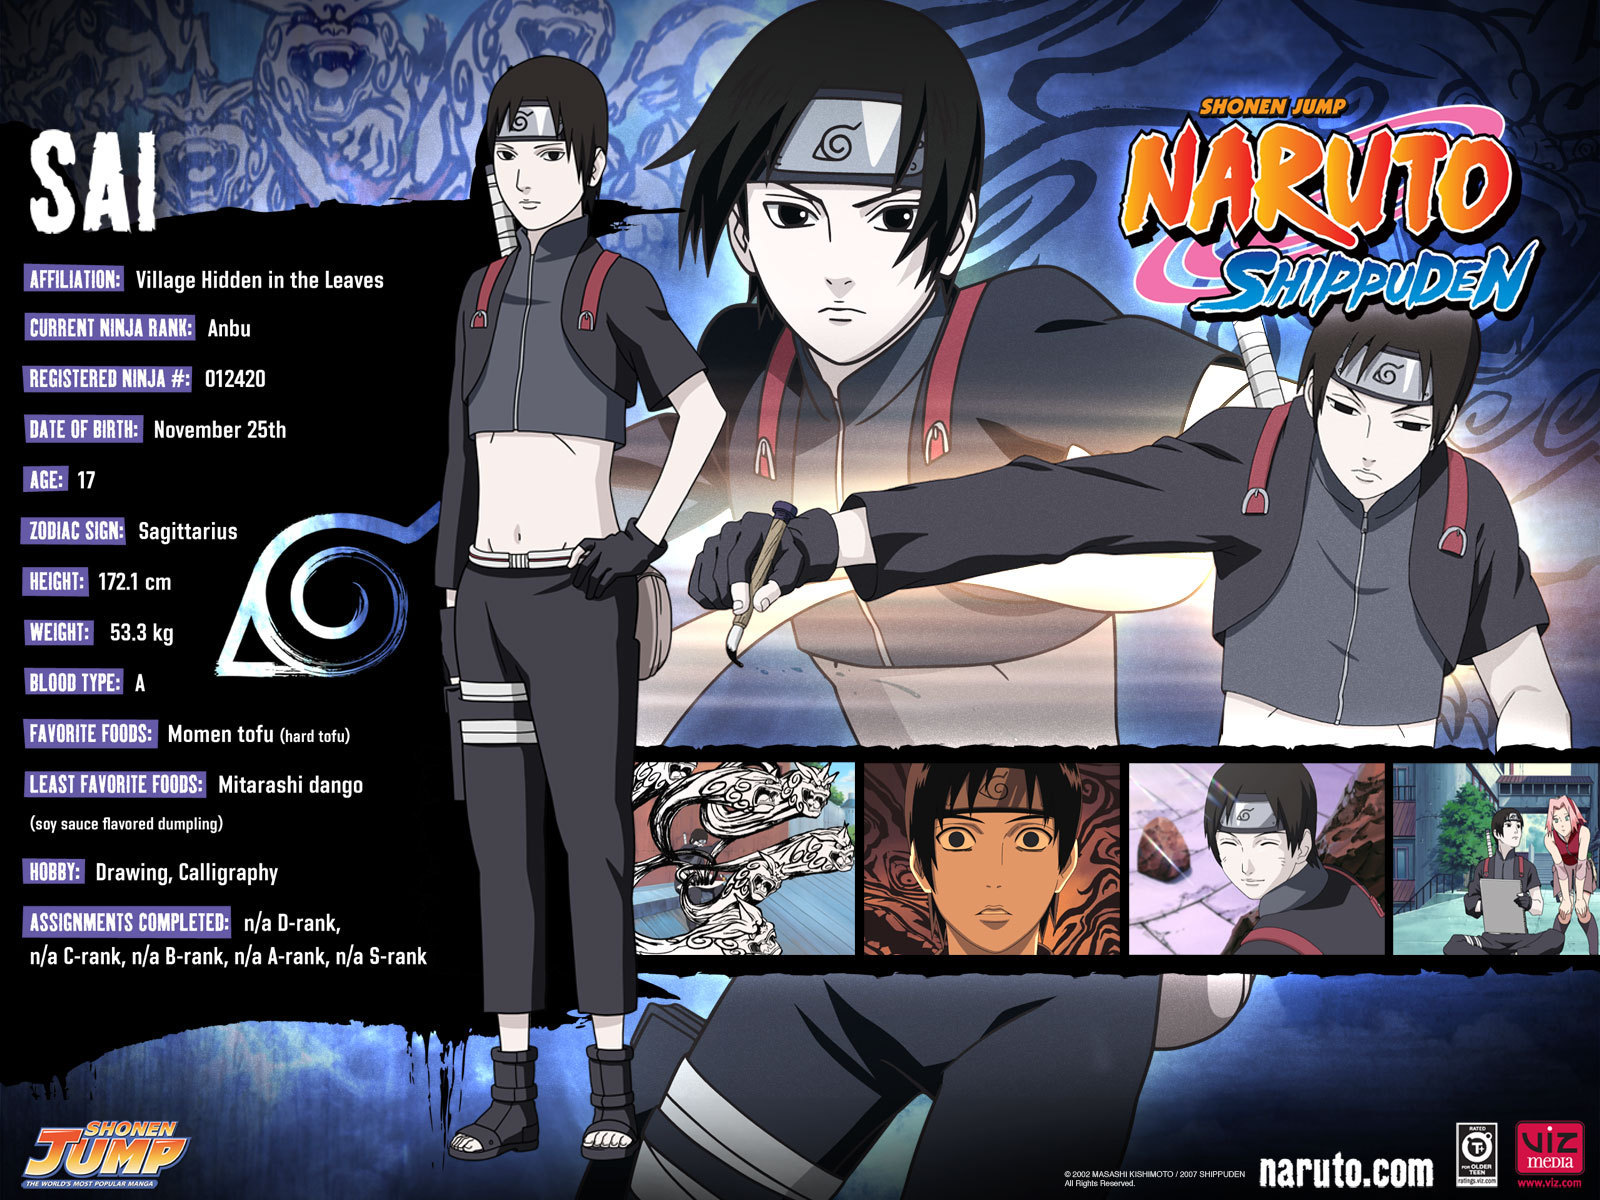 Naruto Sai Image Information HD Wallpaper And